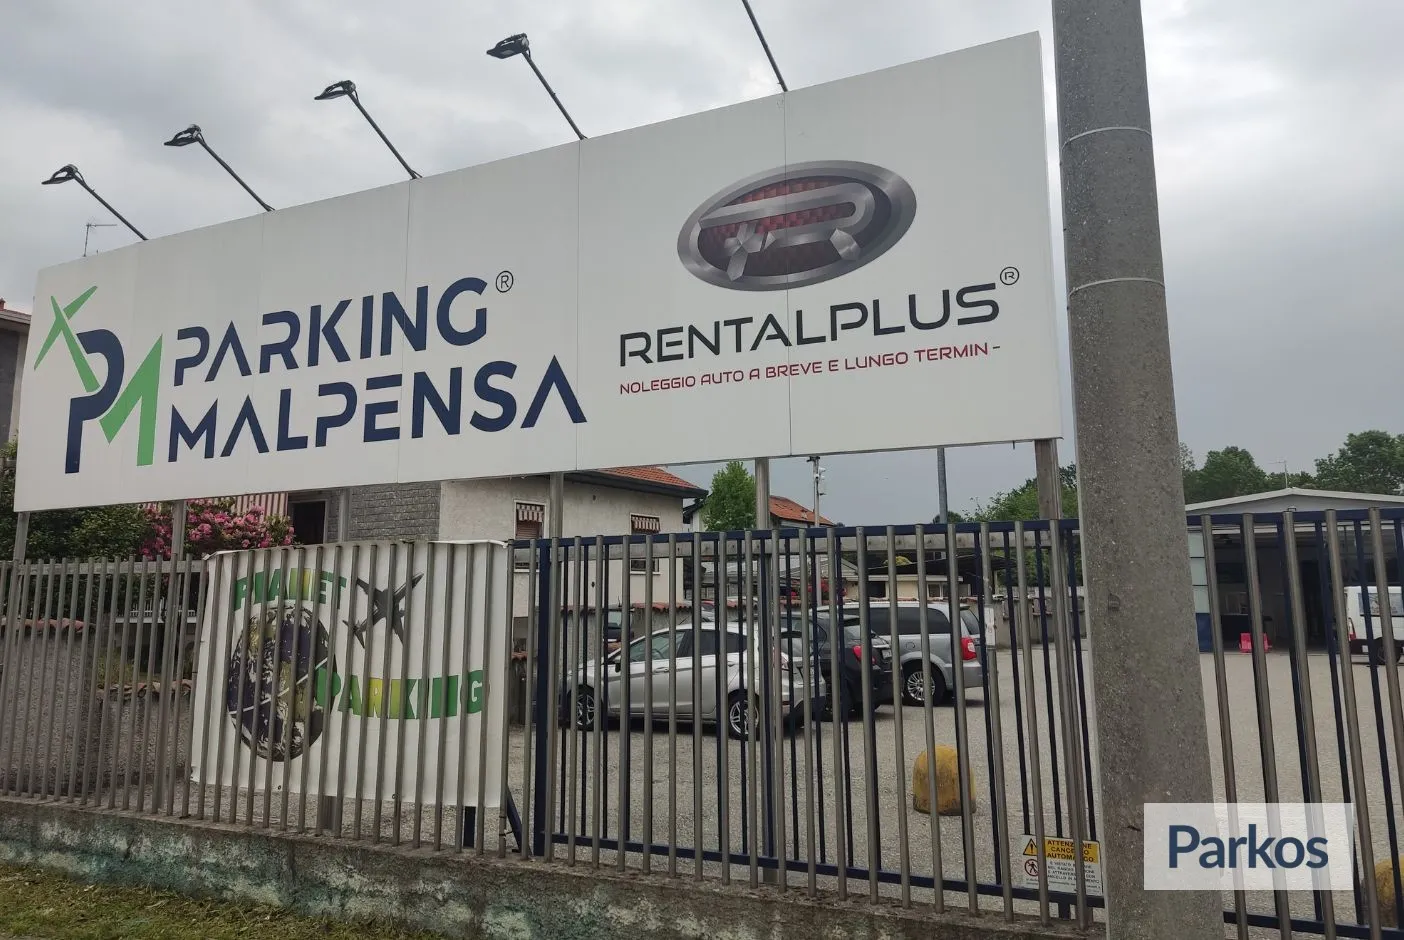 Planet Parking Malpensa (Paga in parcheggio) - Parcheggio Malpensa - picture 1